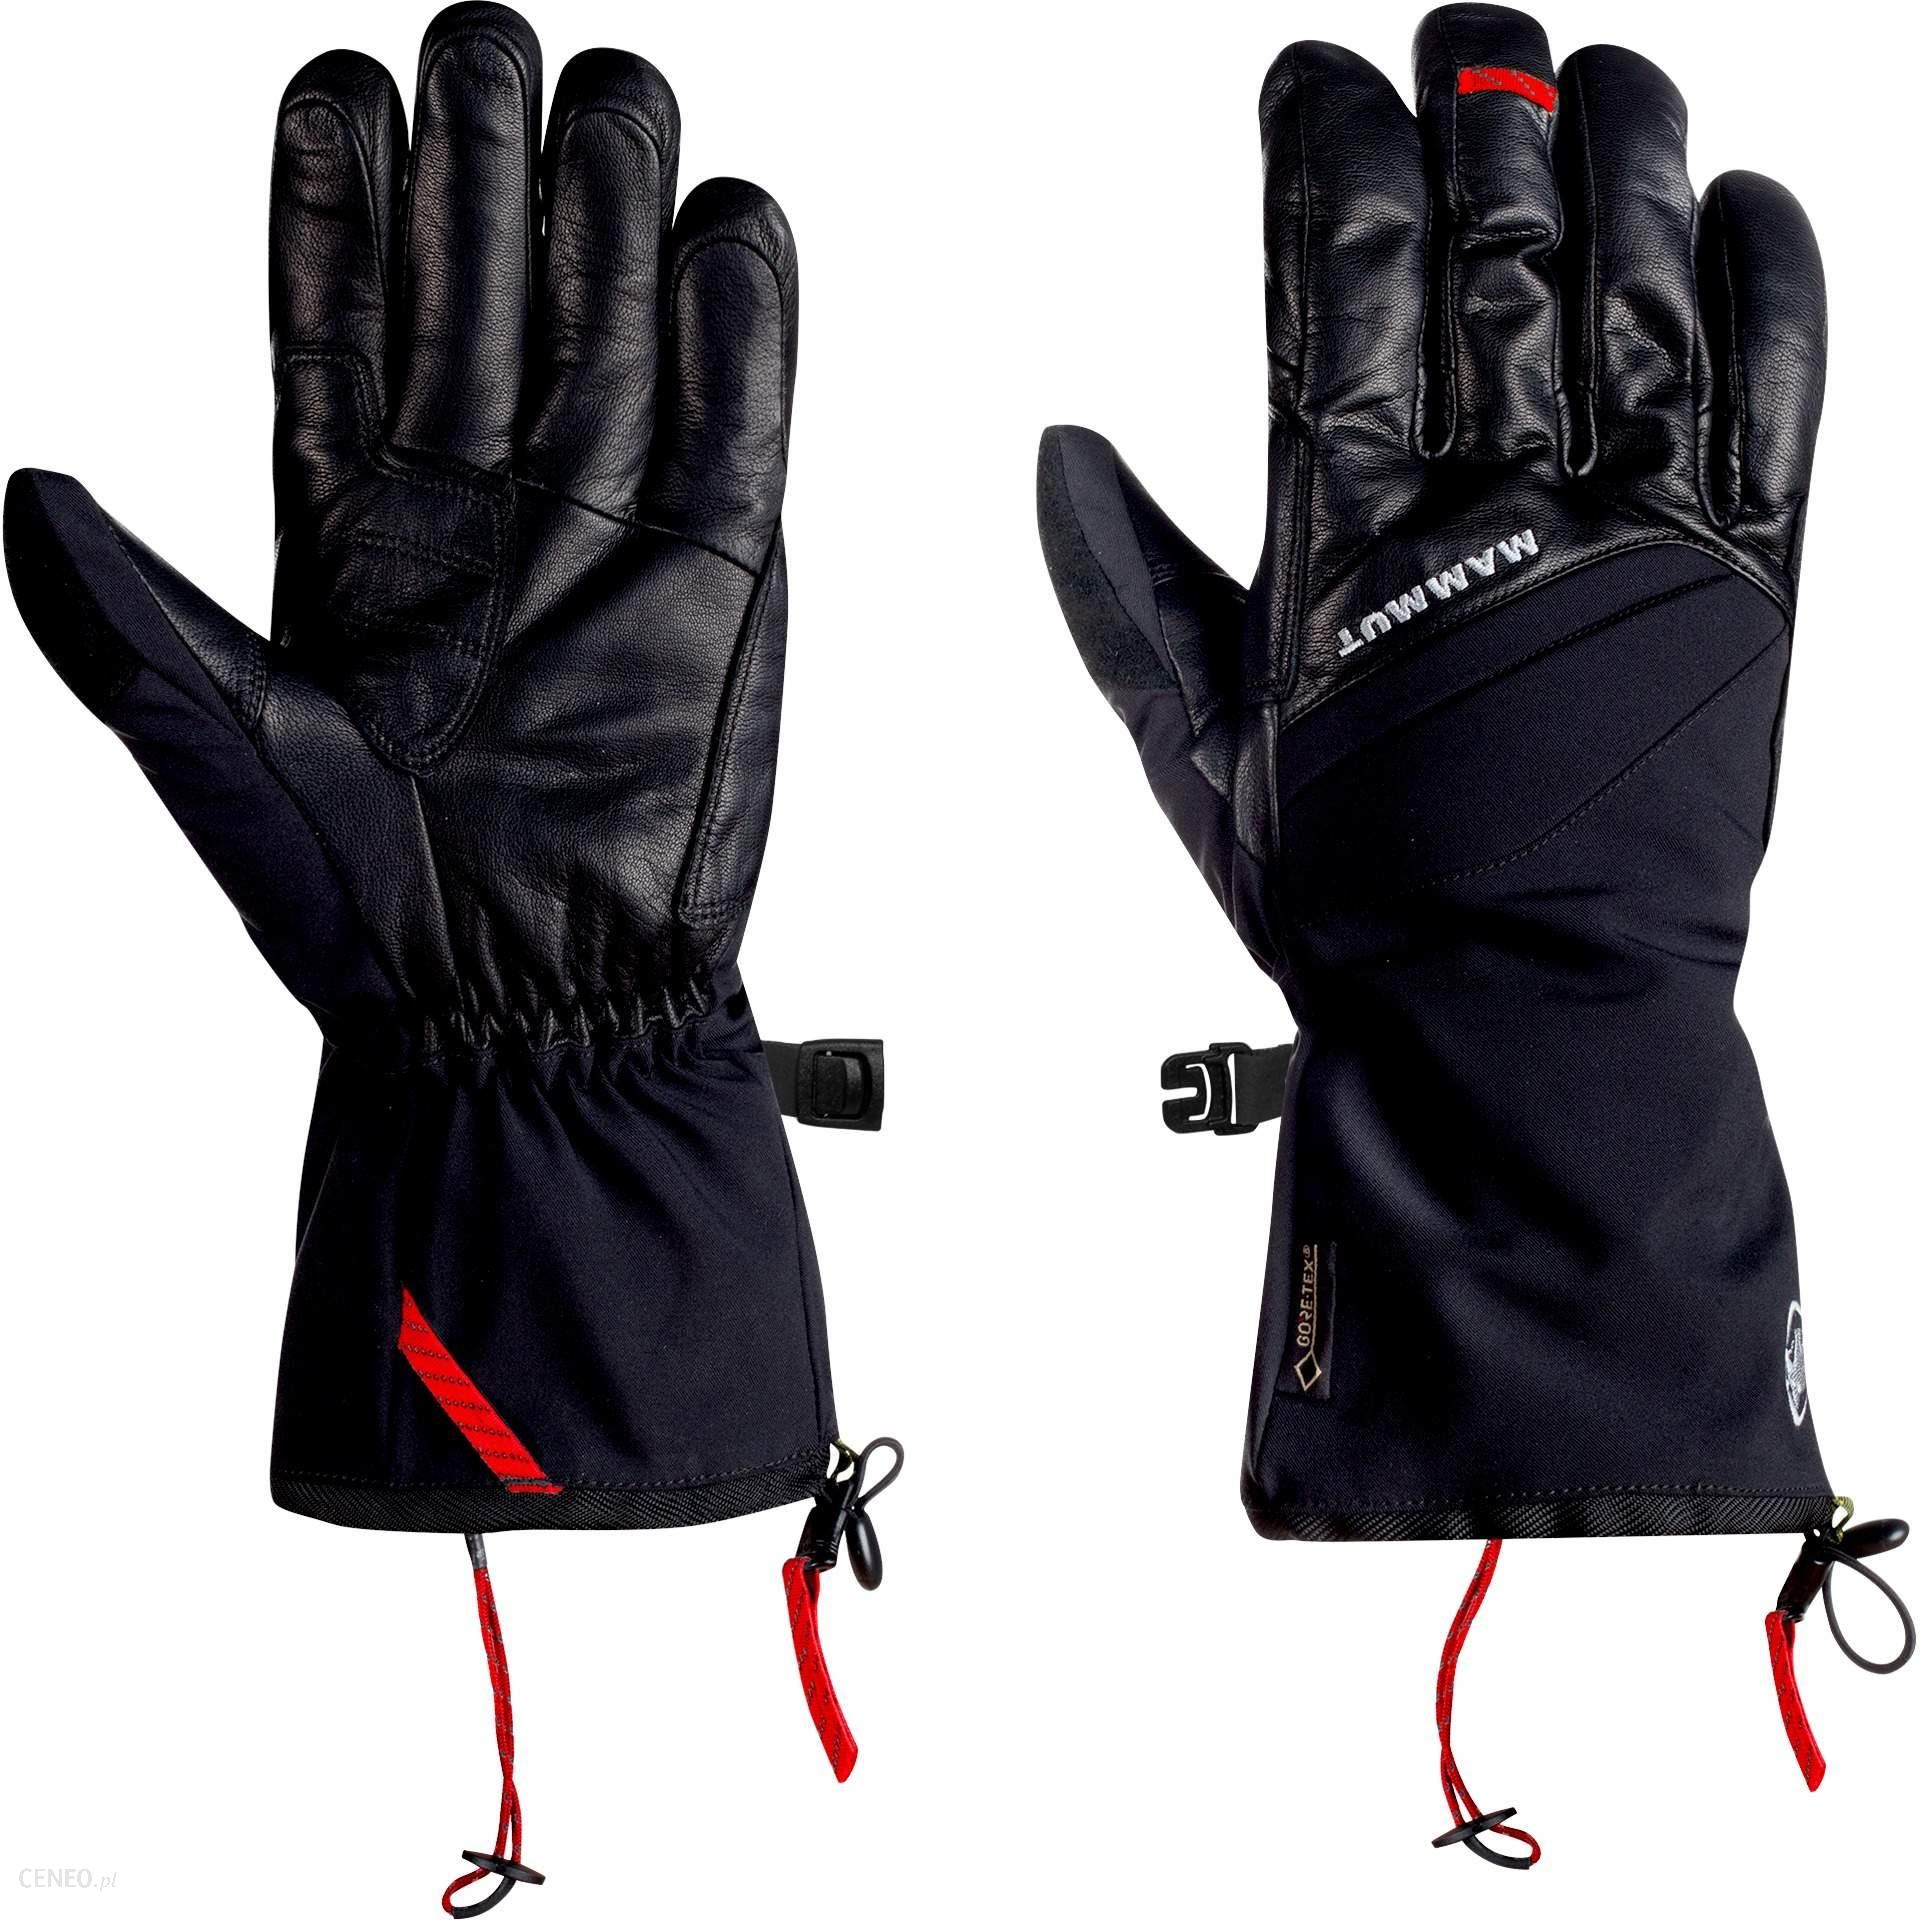 Mammut Meron Thermo 2W1 Glove 7 Black - Ceny i opinie - Ceneo.pl